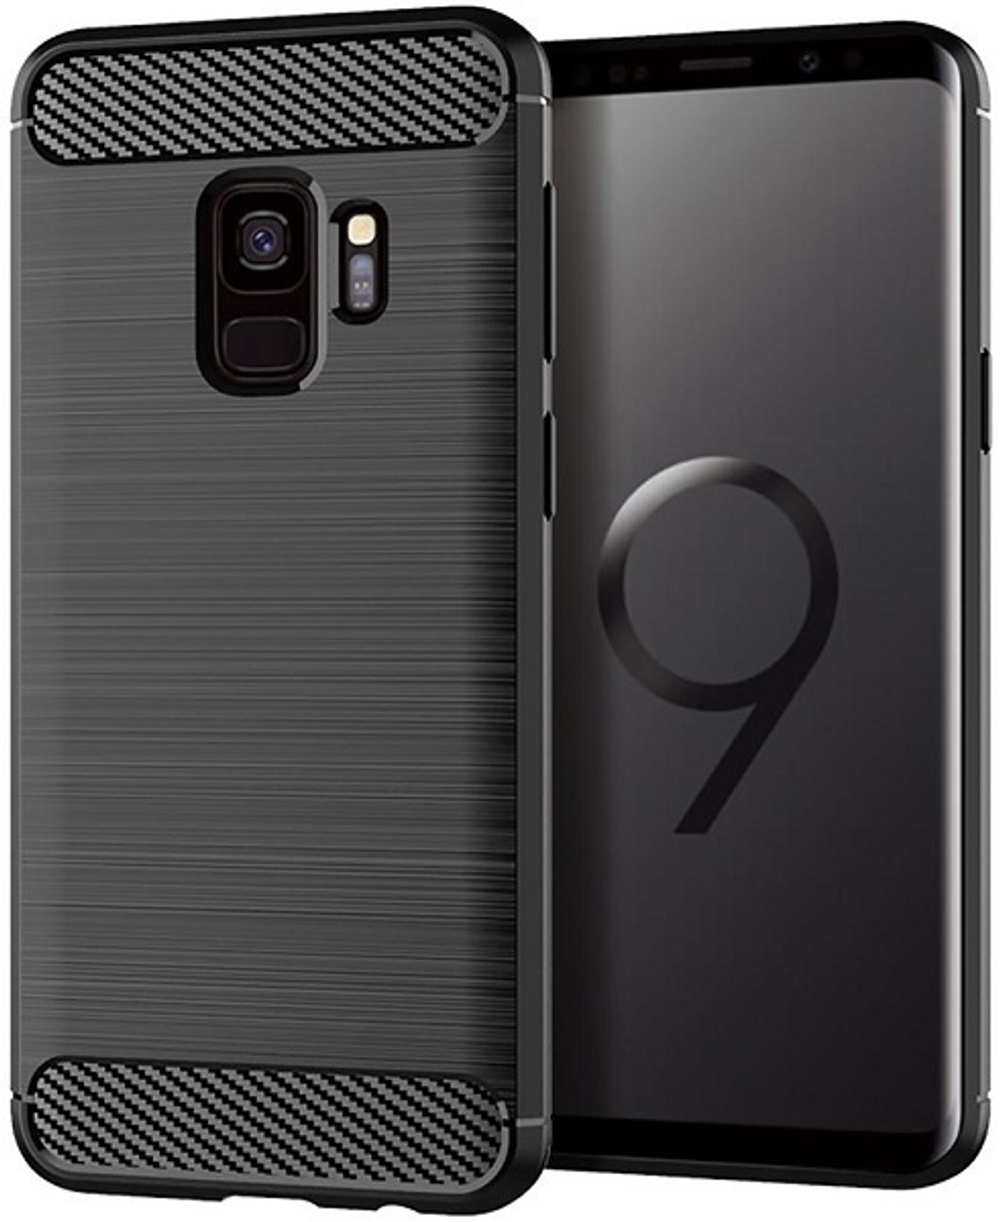 Чехол для Samsung Galaxy S9 цвет Black (черный), серия Carbon от Caseport